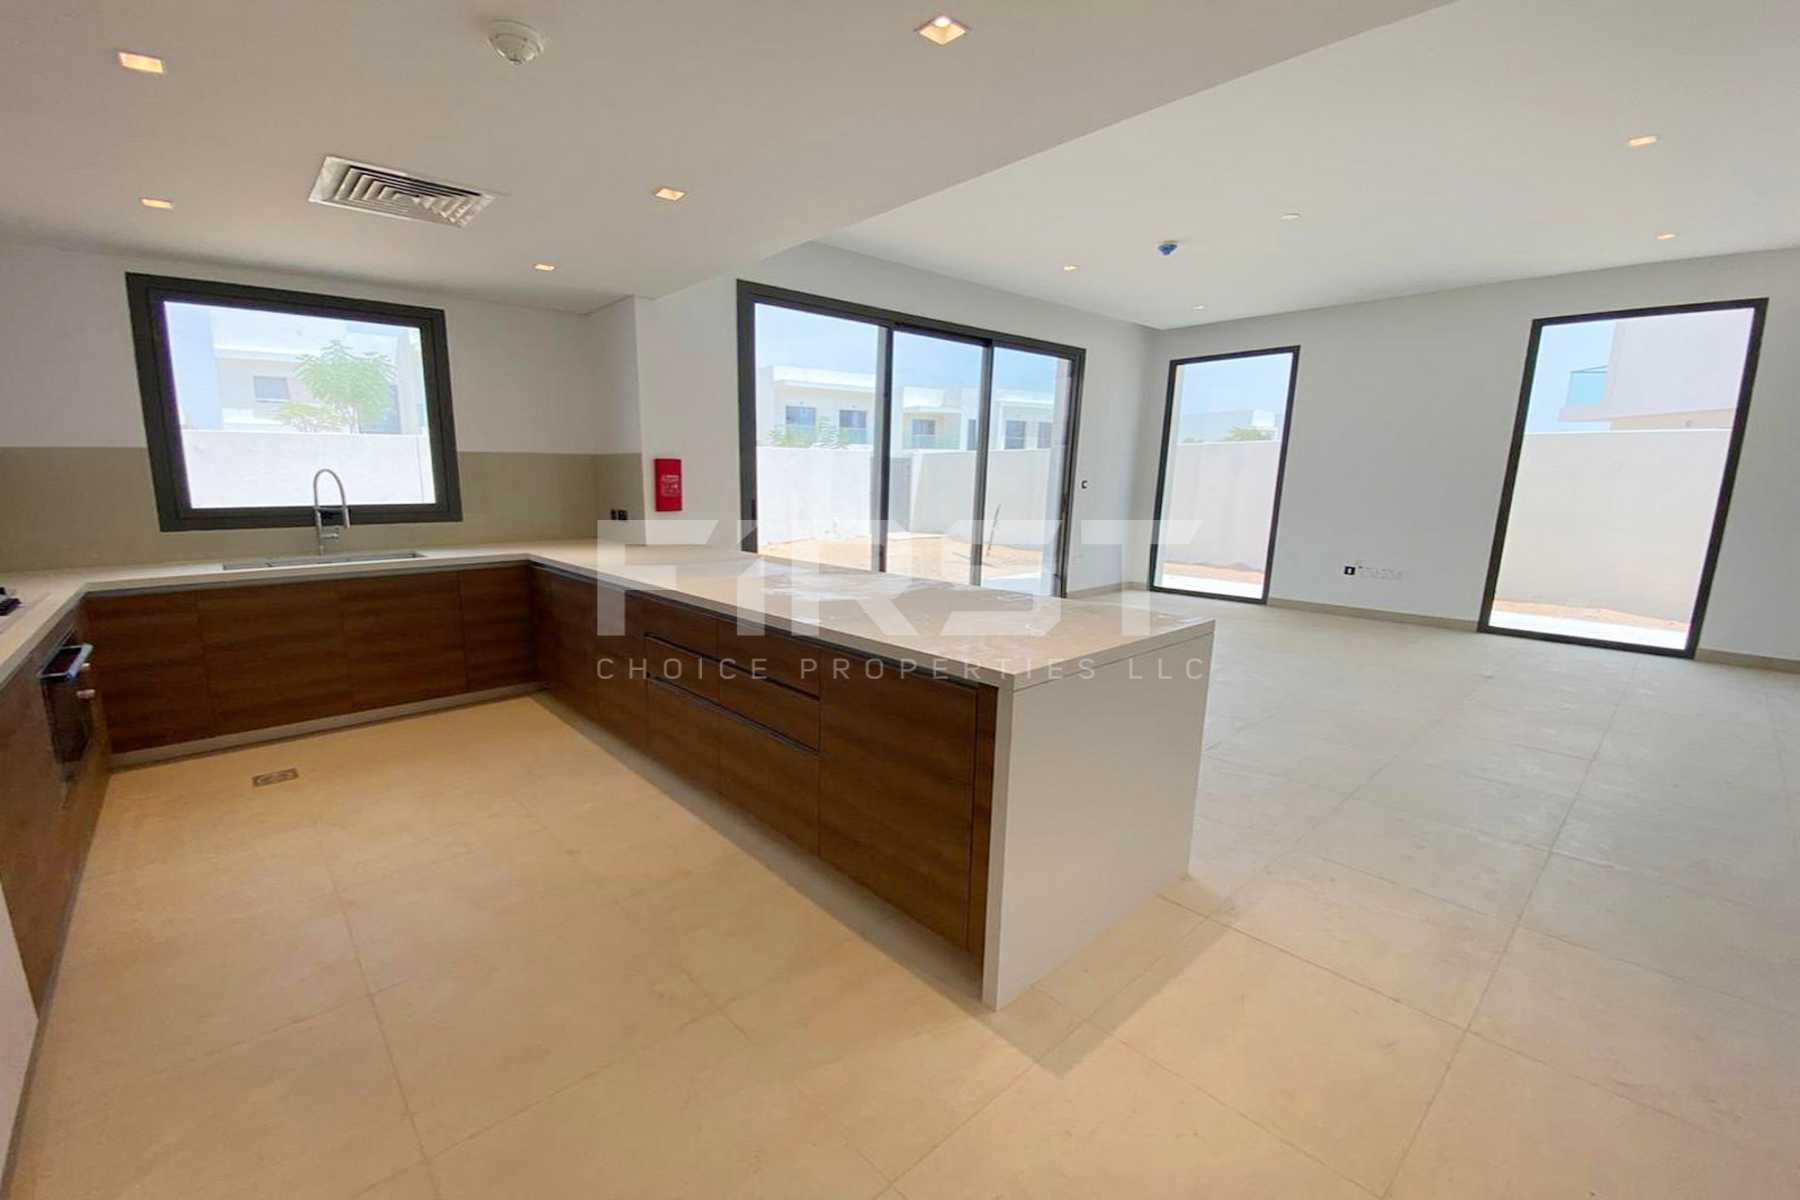 External Photo of 4 Bedroom Duplex Type 4Y in Yas Acres Yas Island Abu Dhabi UAE (12).jpg